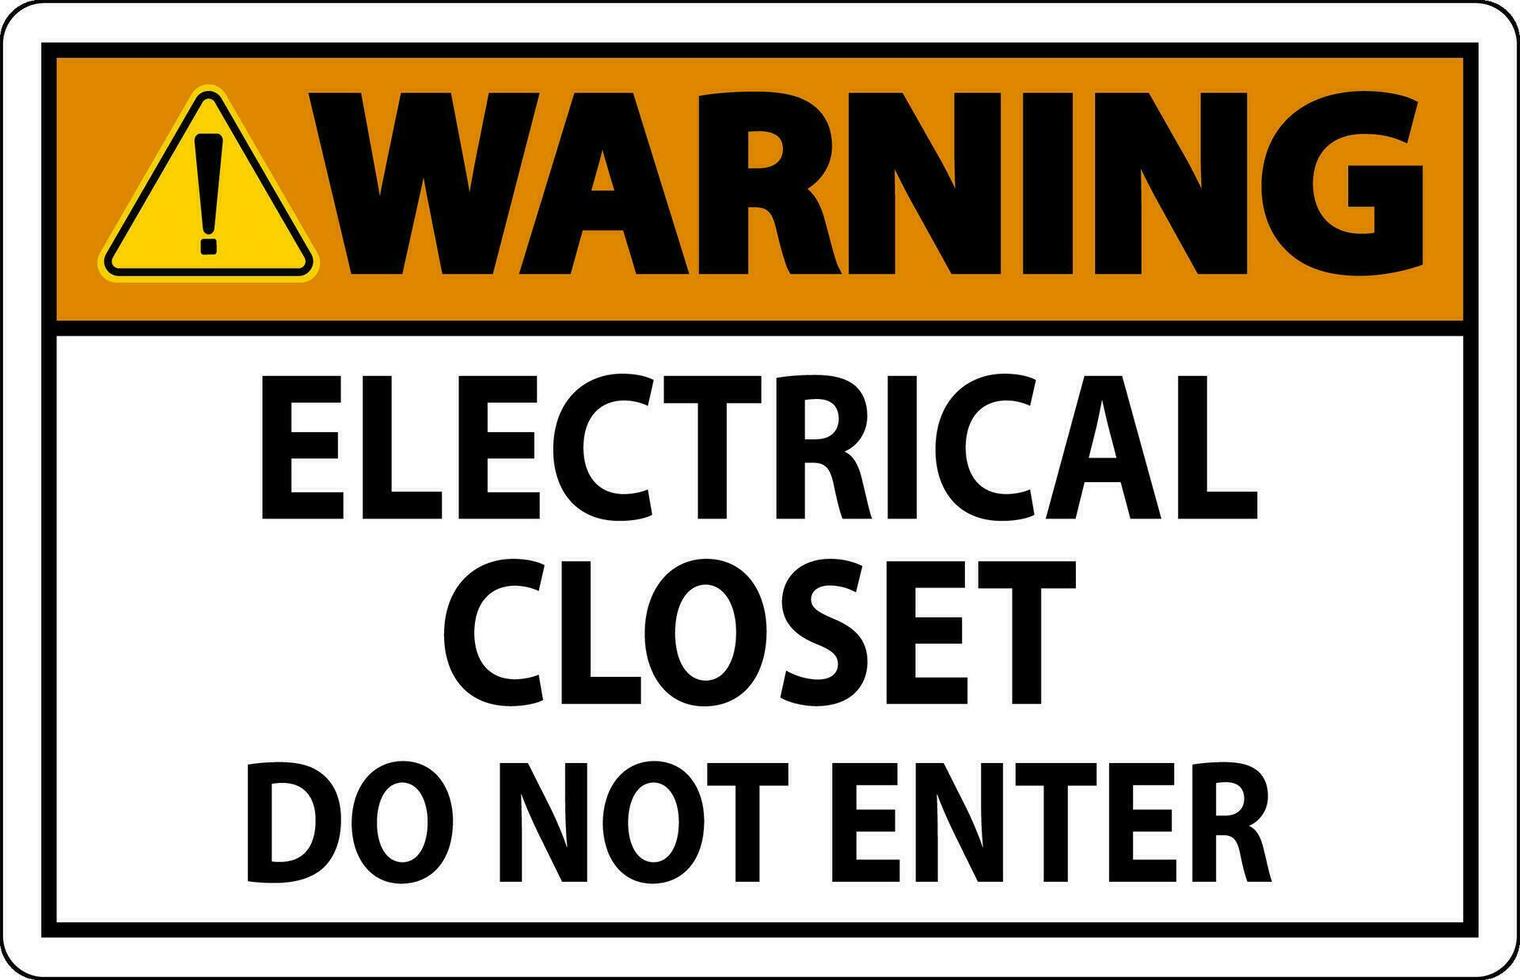 waarschuwing teken elektrisch kast - Doen niet invoeren vector